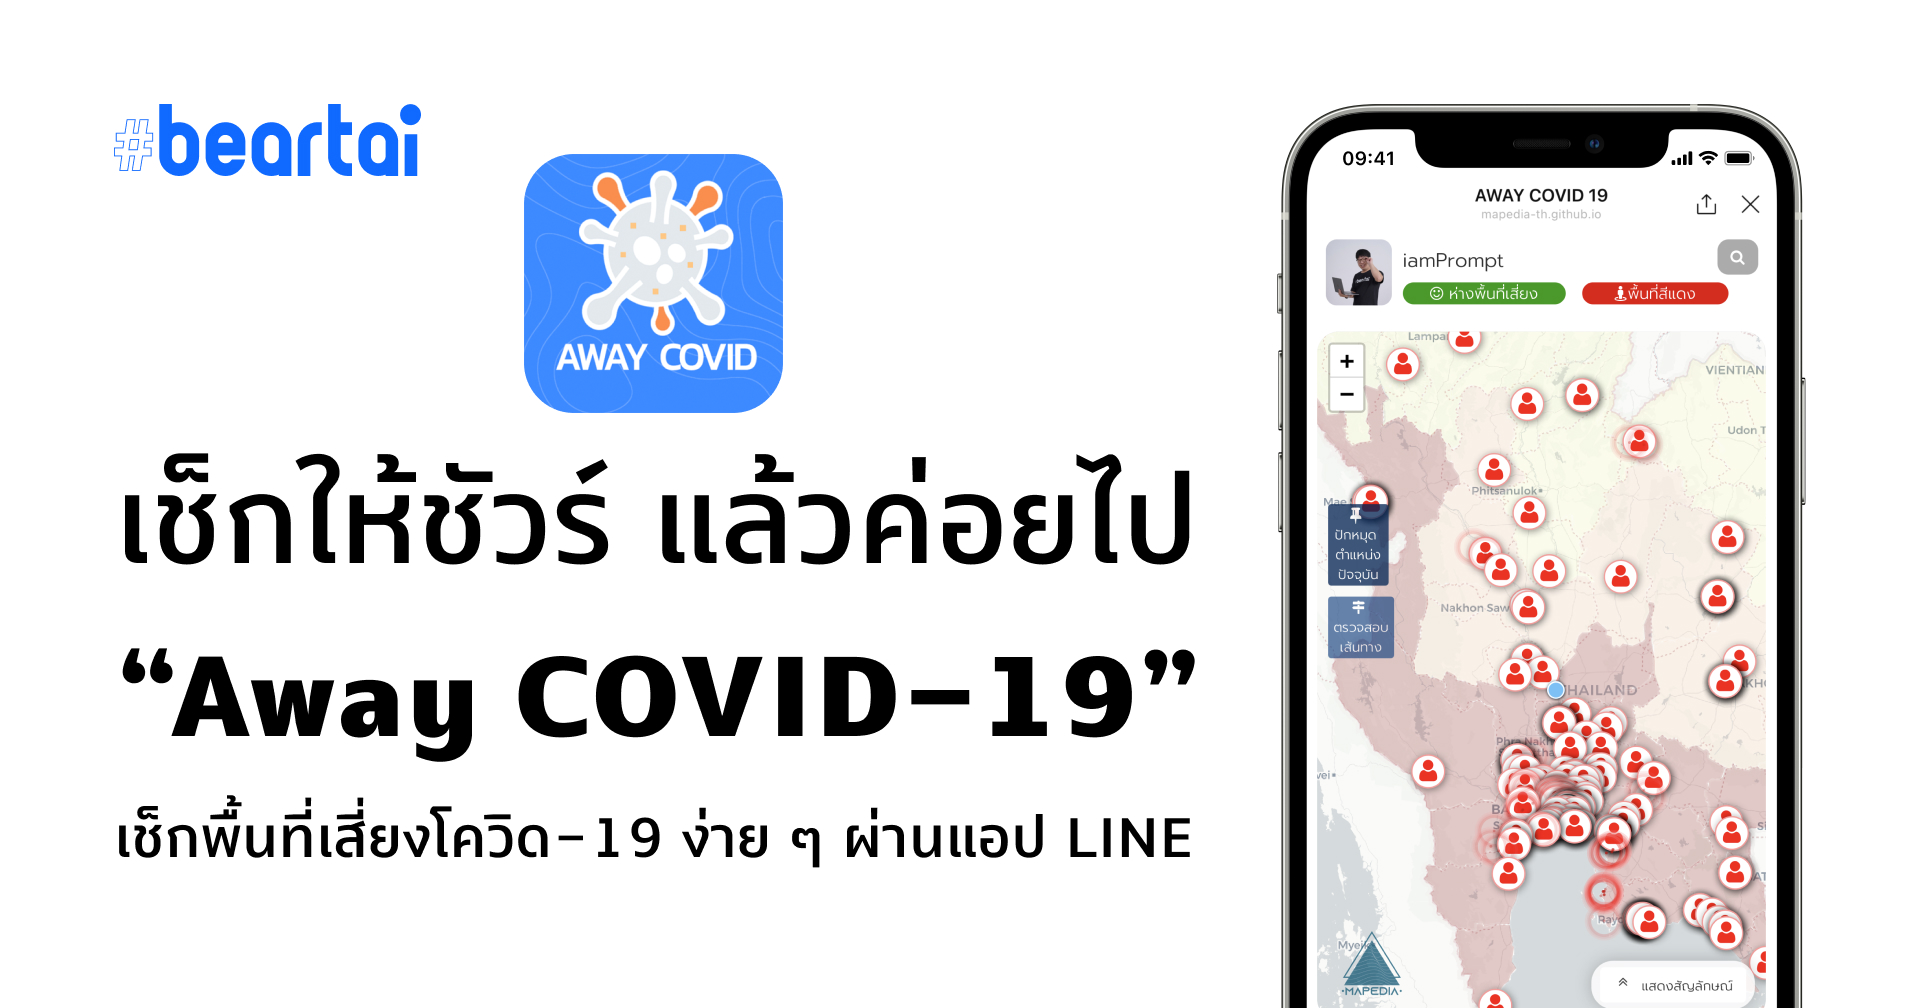 เช็กให้ชัวร์ ห่างไกลพื้นที่เสี่ยง COVID-19 ด้วยแชตบอต “Away COVID-19” บนแอป LINE